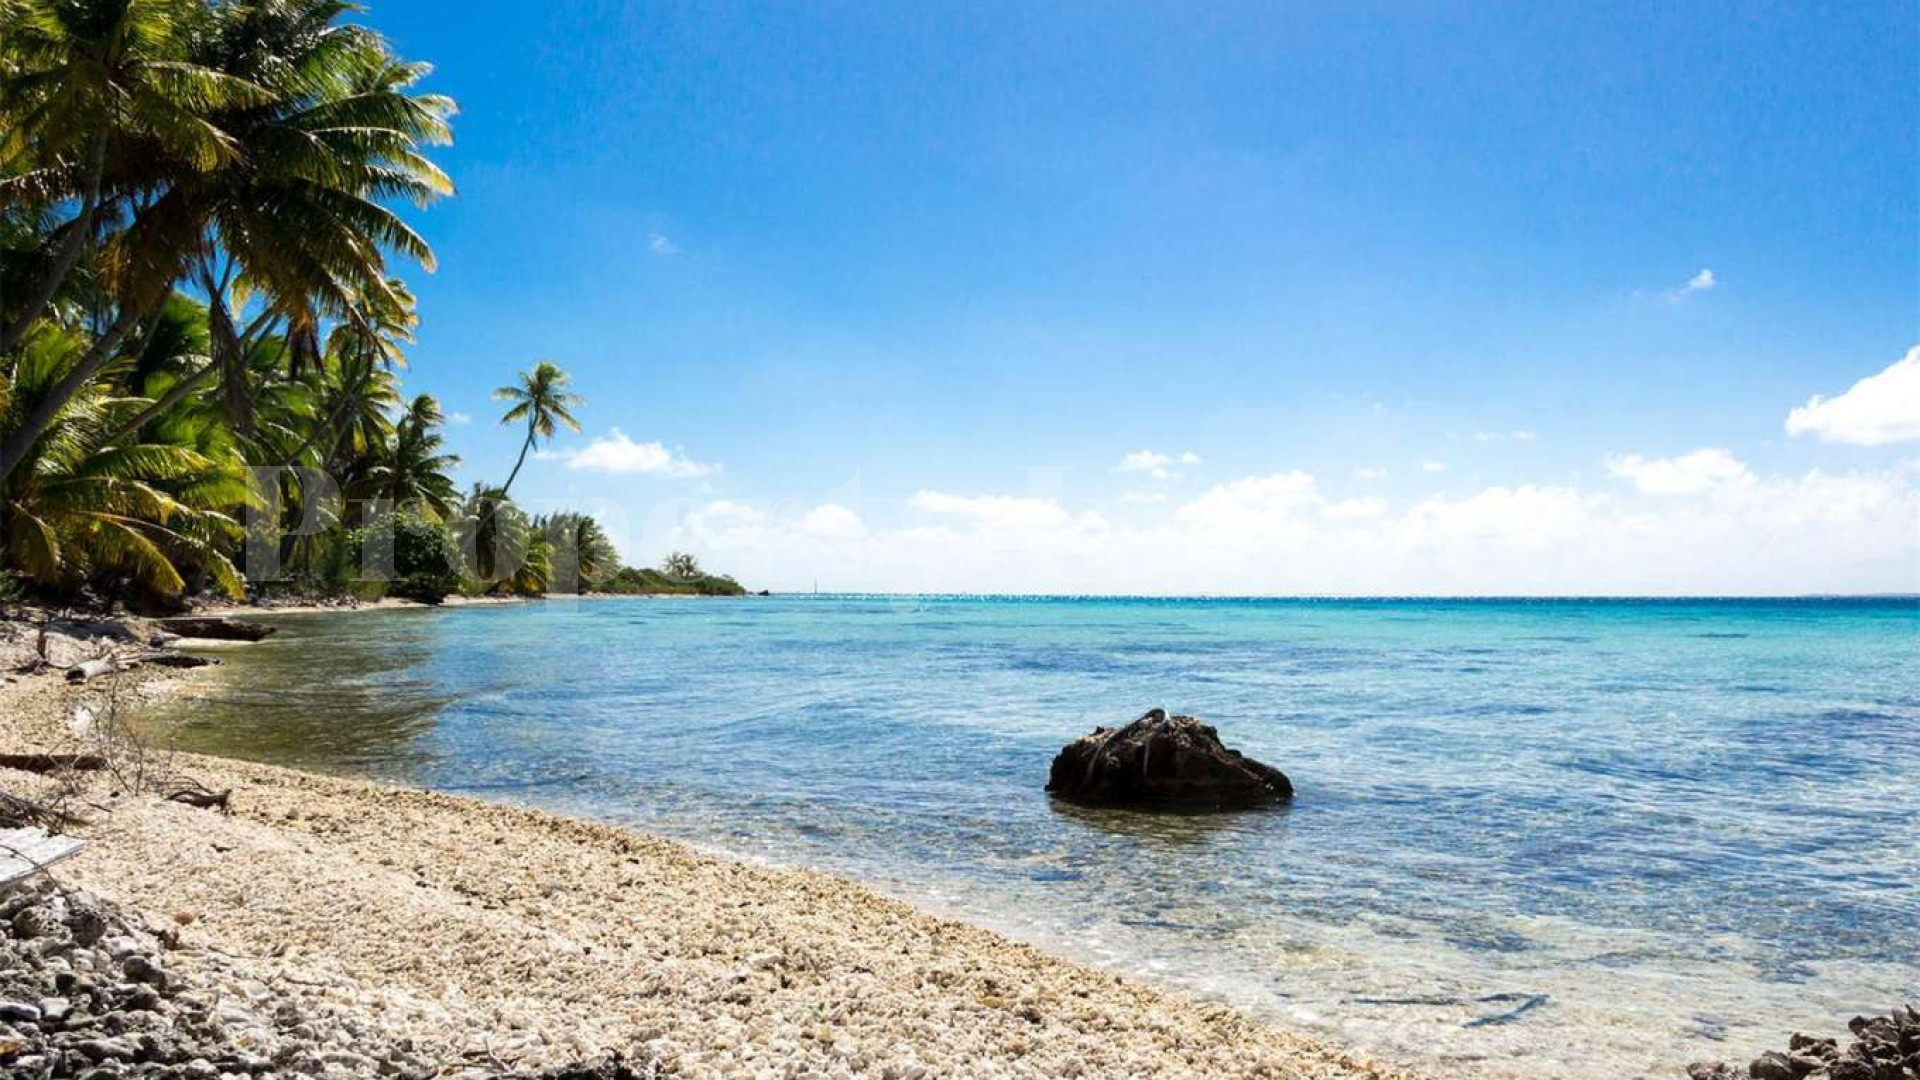 Продается нетронутый частный дикий остров 9,7 га во Французской Полинезии